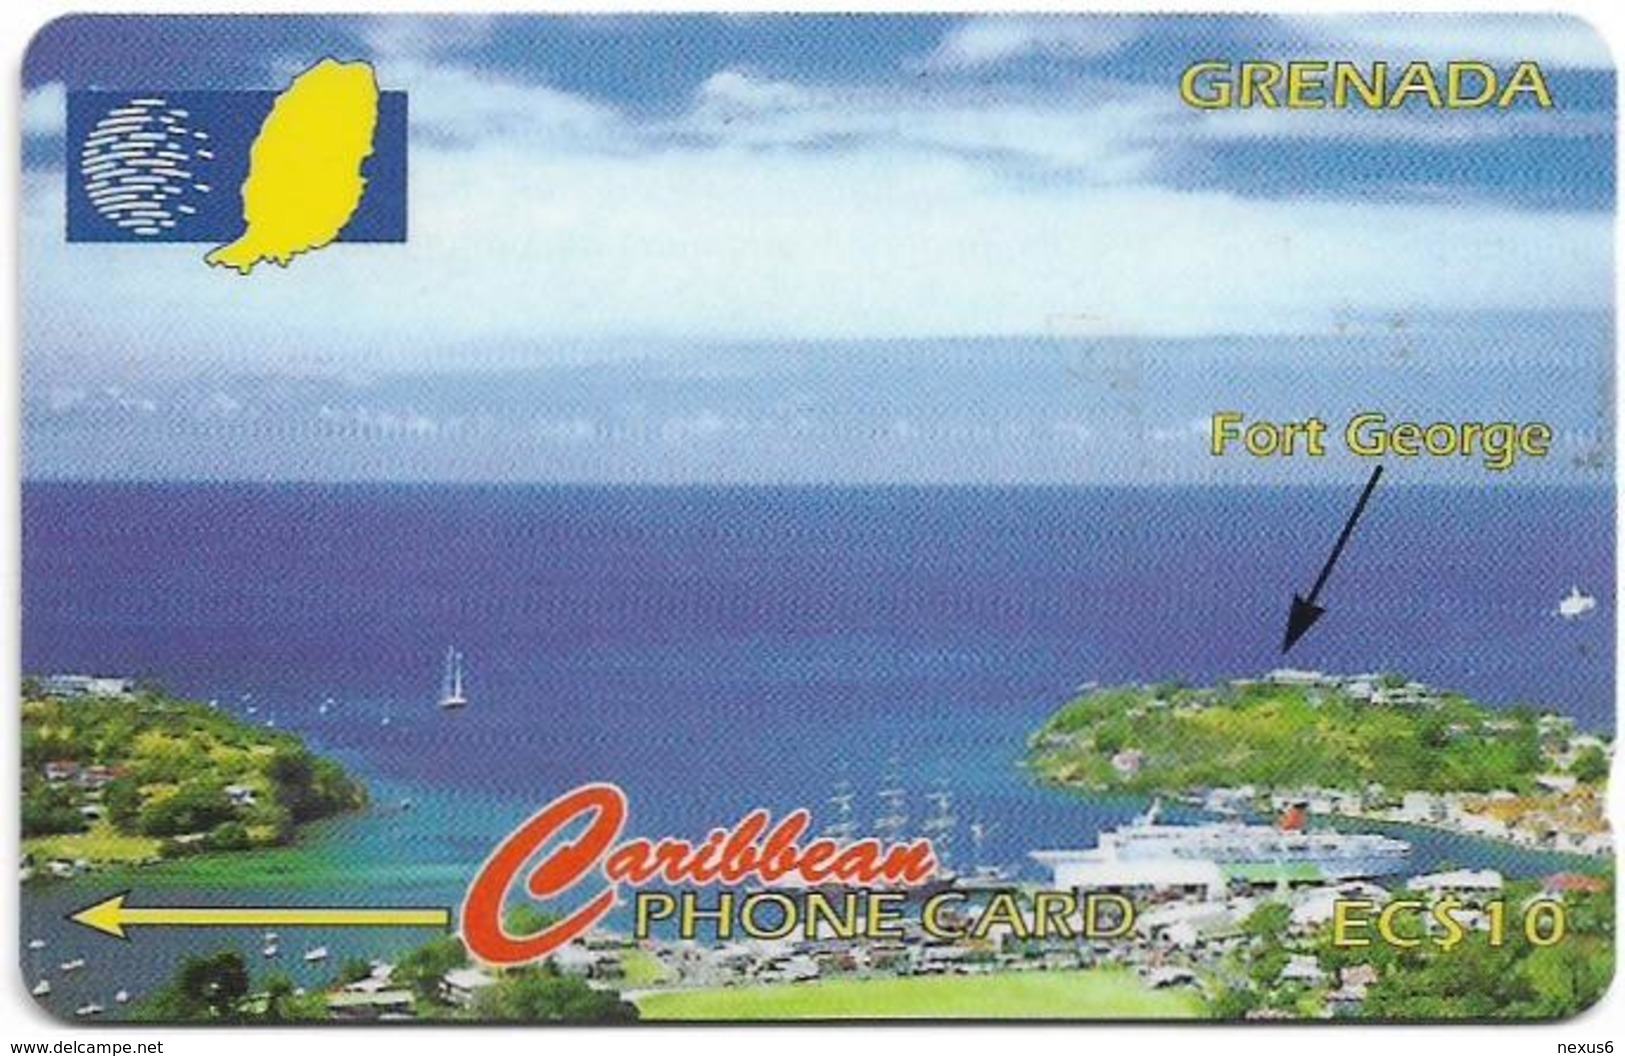 Grenada - C&W (GPT) - Fort George, 51CGRB, 1996, 16.000ex, Used - Grenada